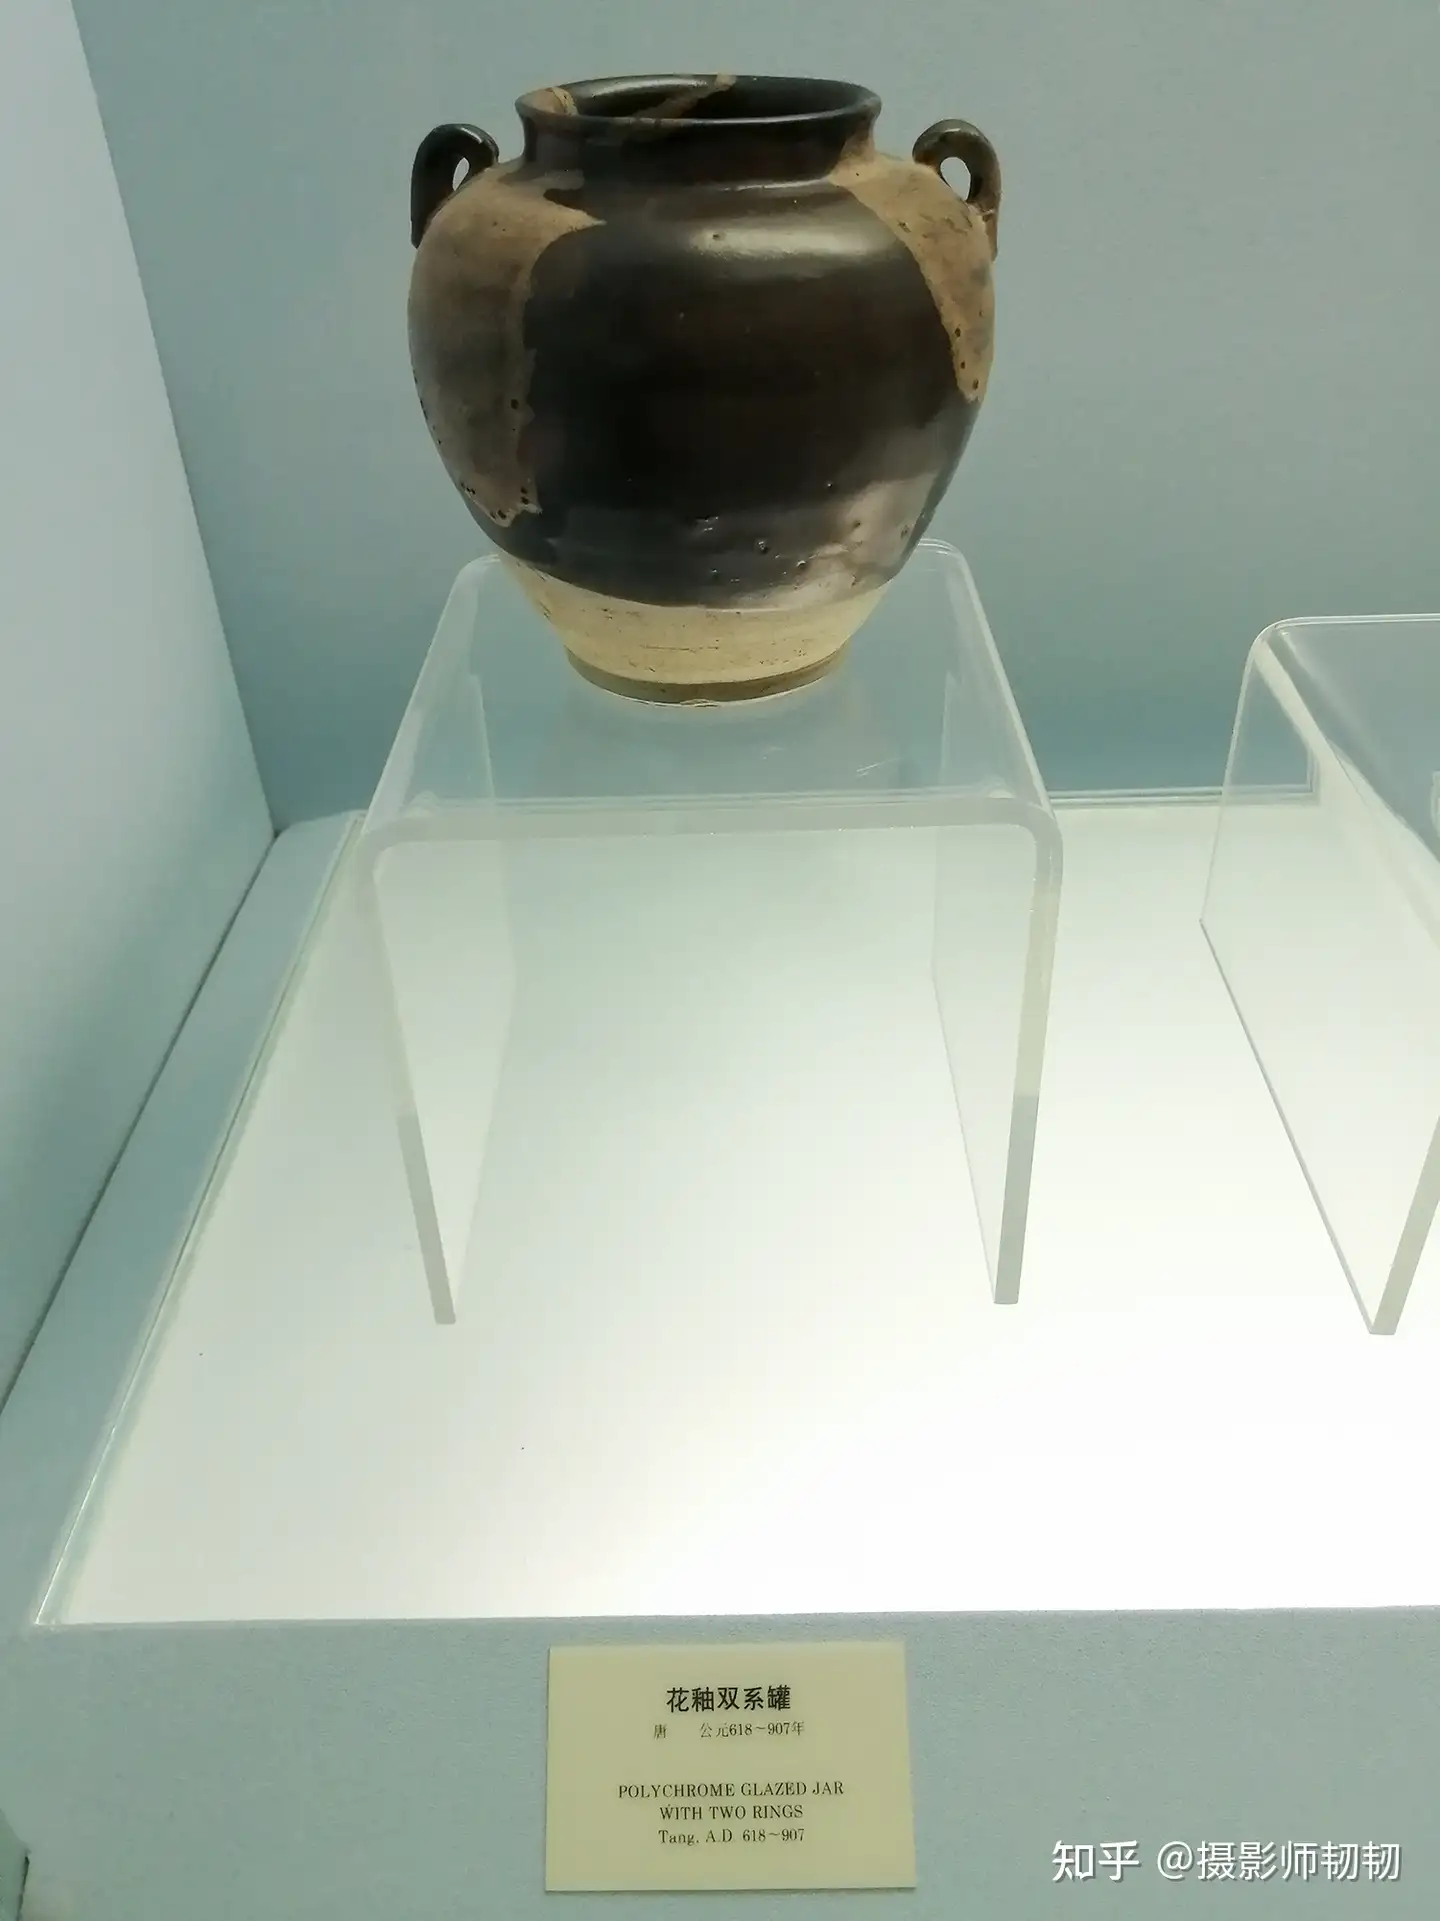 B 黄釉加彩俑一対 唐時代初期 遺跡発掘品 明器 陶器 中国-